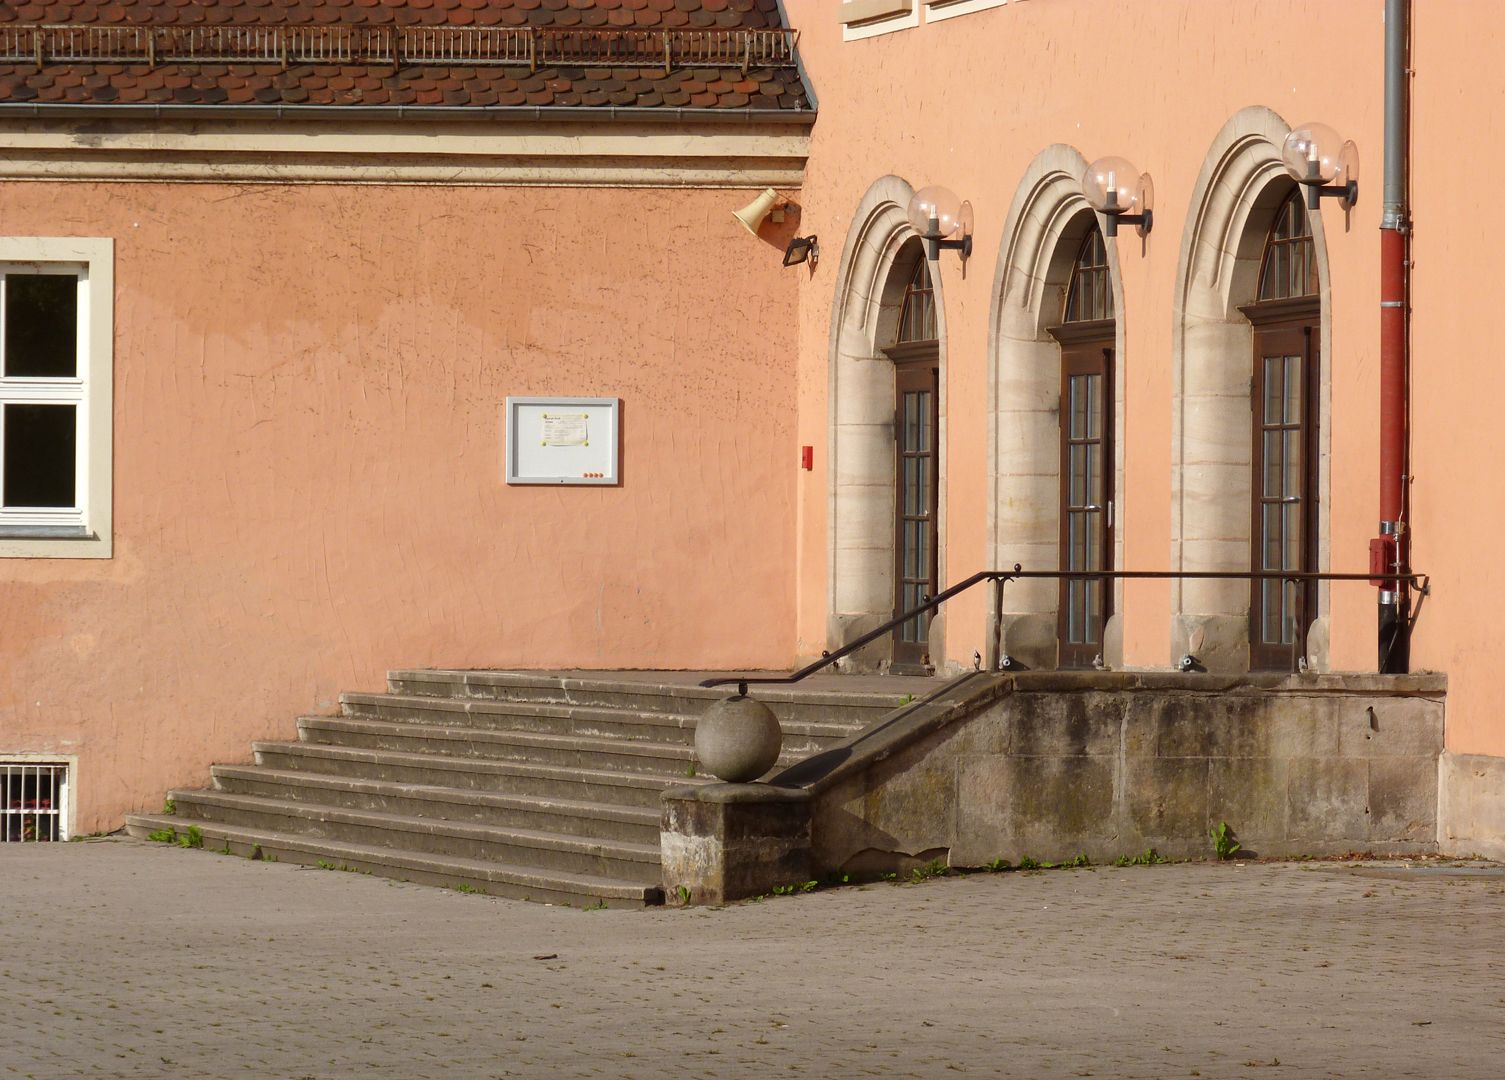 Konrad-Groß-School Hofseite, Eingang